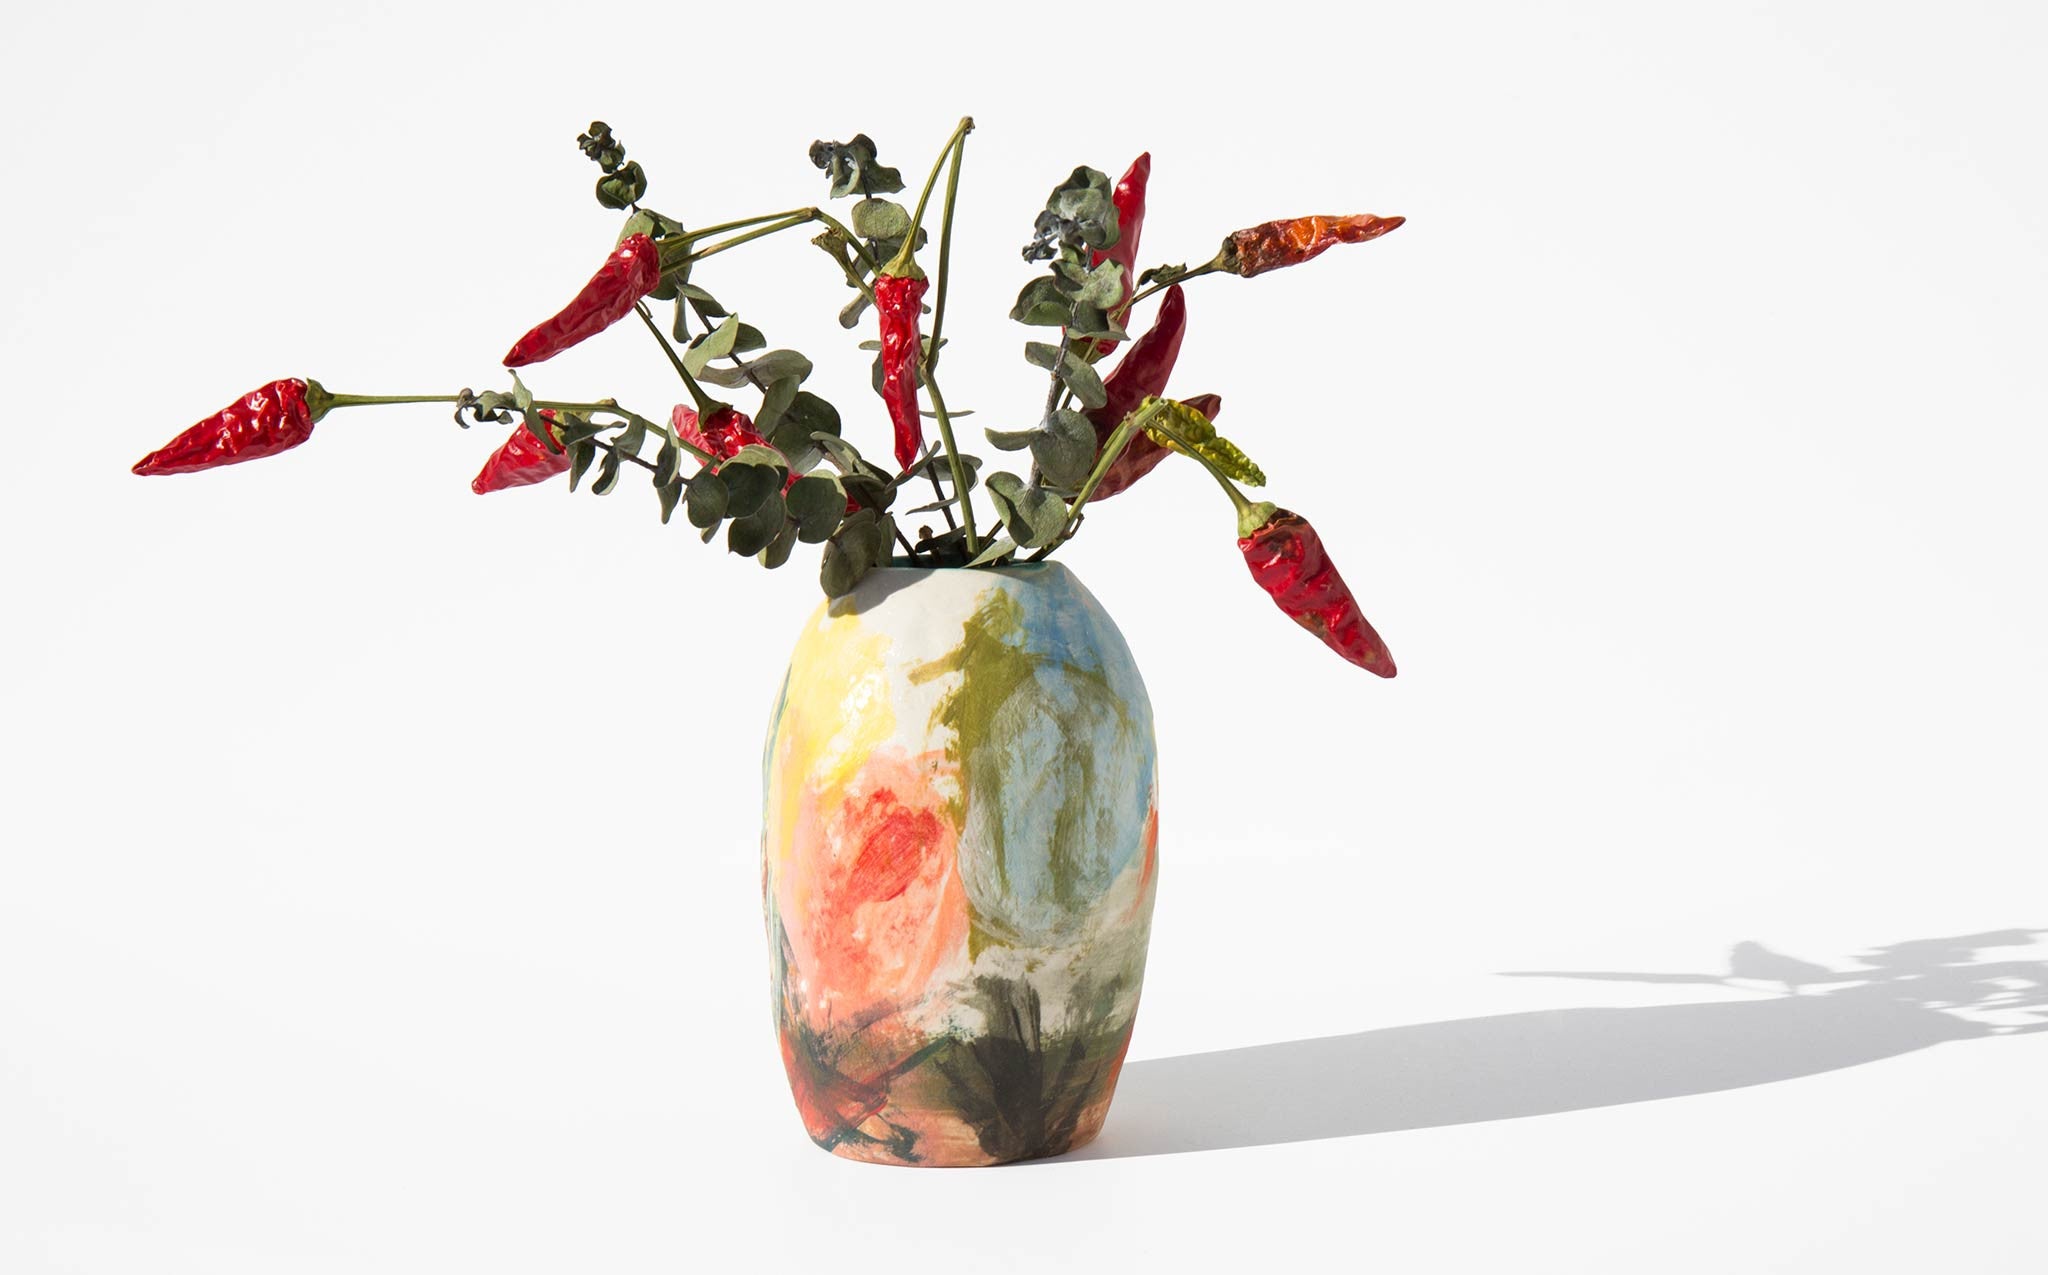 Shino Takeda Painted Ceramic Vase